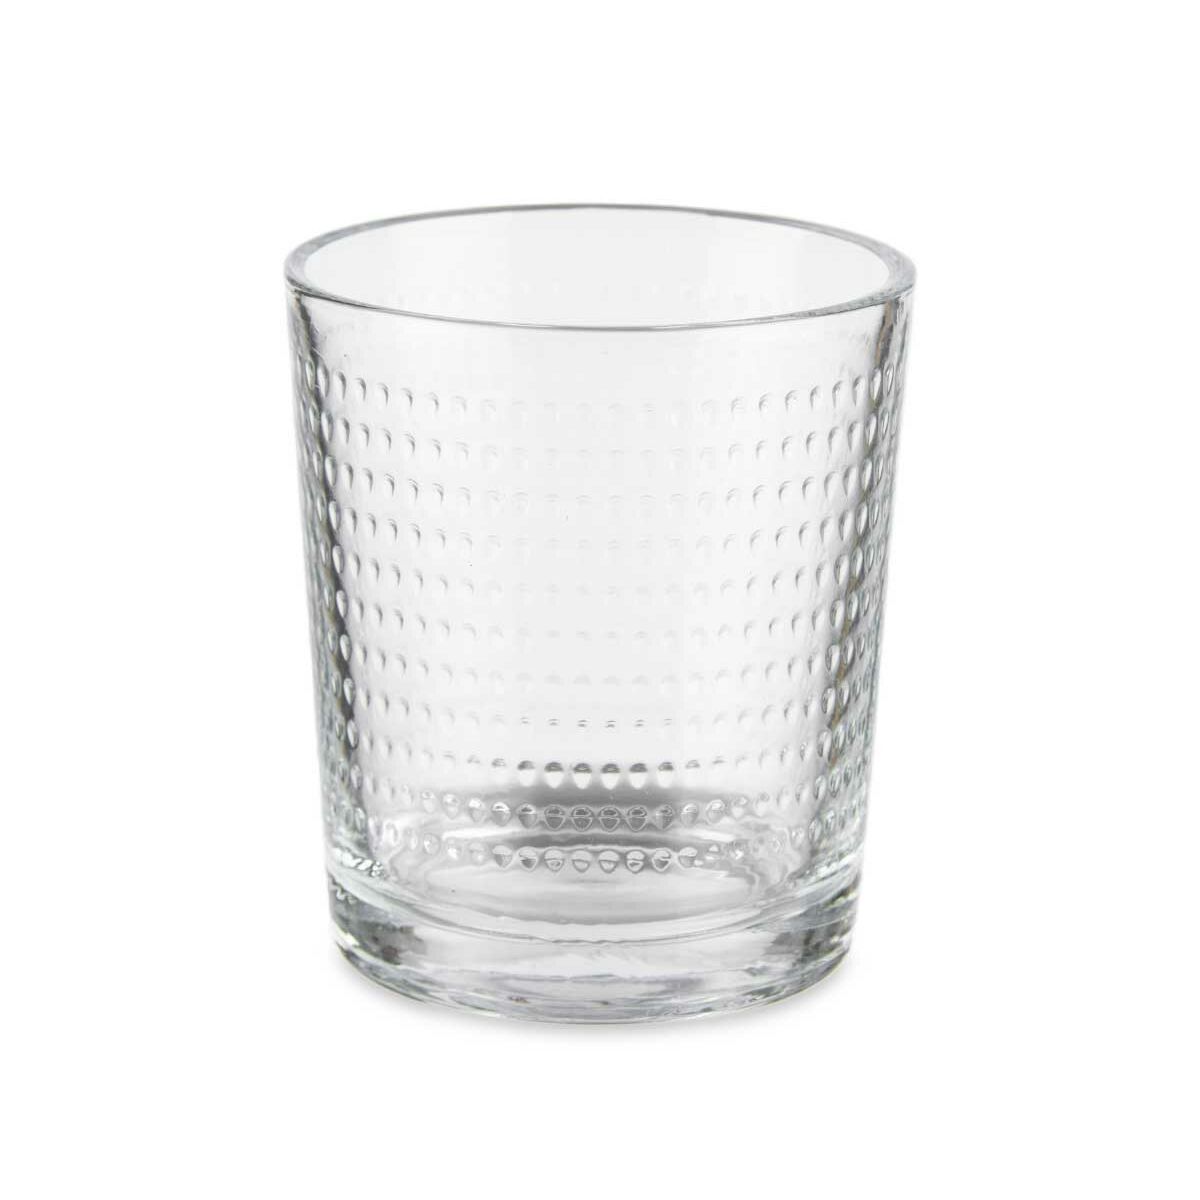 Gläserset Punkte Durchsichtig Glas 265 ml (8 Stück)